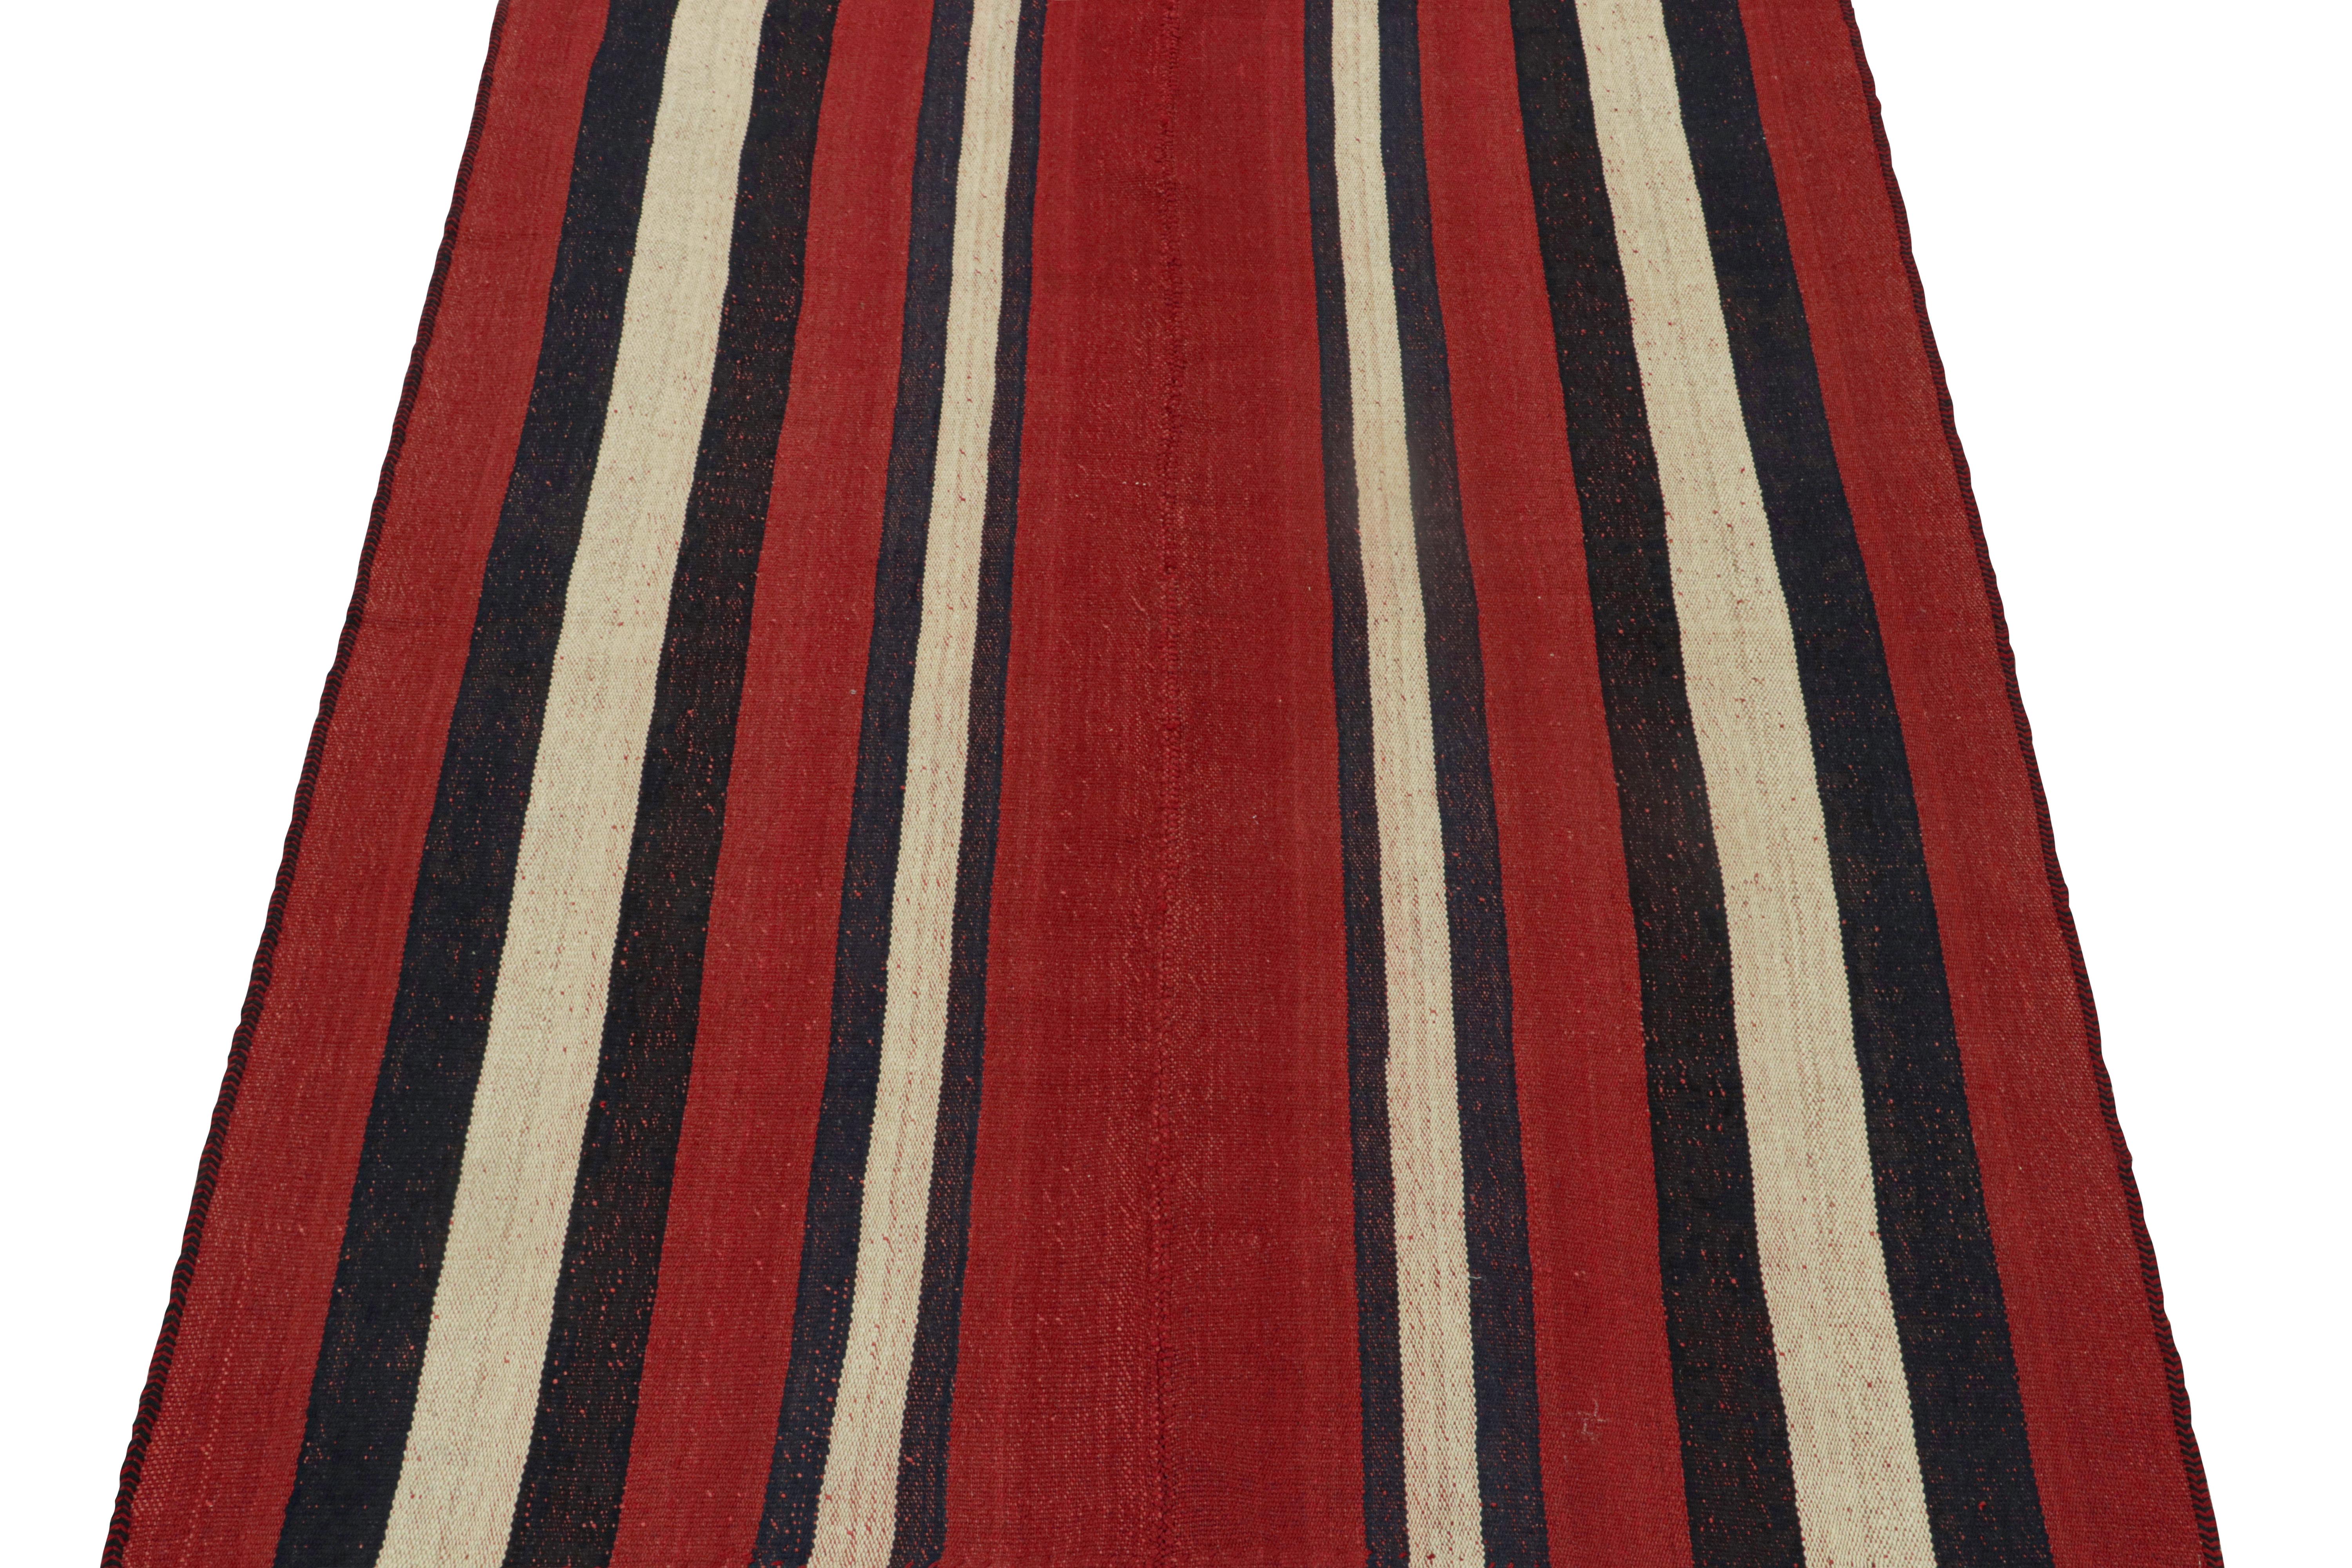 Ce Rug & Kilim Persan vintage de 5x7 est un tapis tribal du milieu du siècle, tissé à la main en laine vers 1950-1960. 

Son dessin représente très probablement un Kilim de style Jajim, une technique de tissage à plat dans laquelle plusieurs pièces